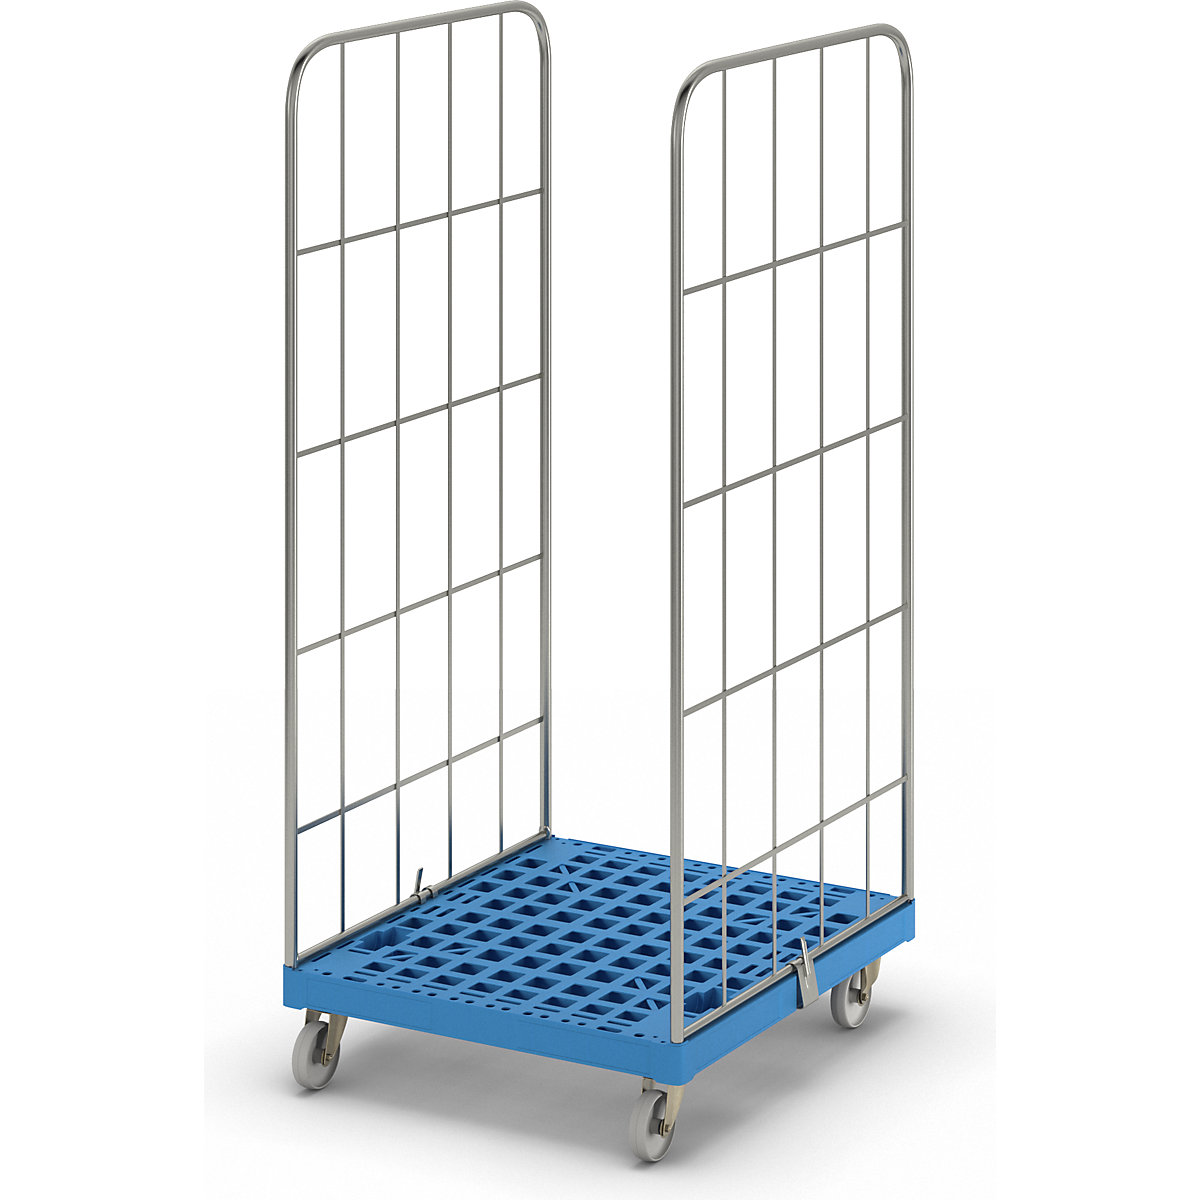 Contentor rolante MODULAR, plataforma rolante em plástico, grade de 2 lados, placa azul clara-11